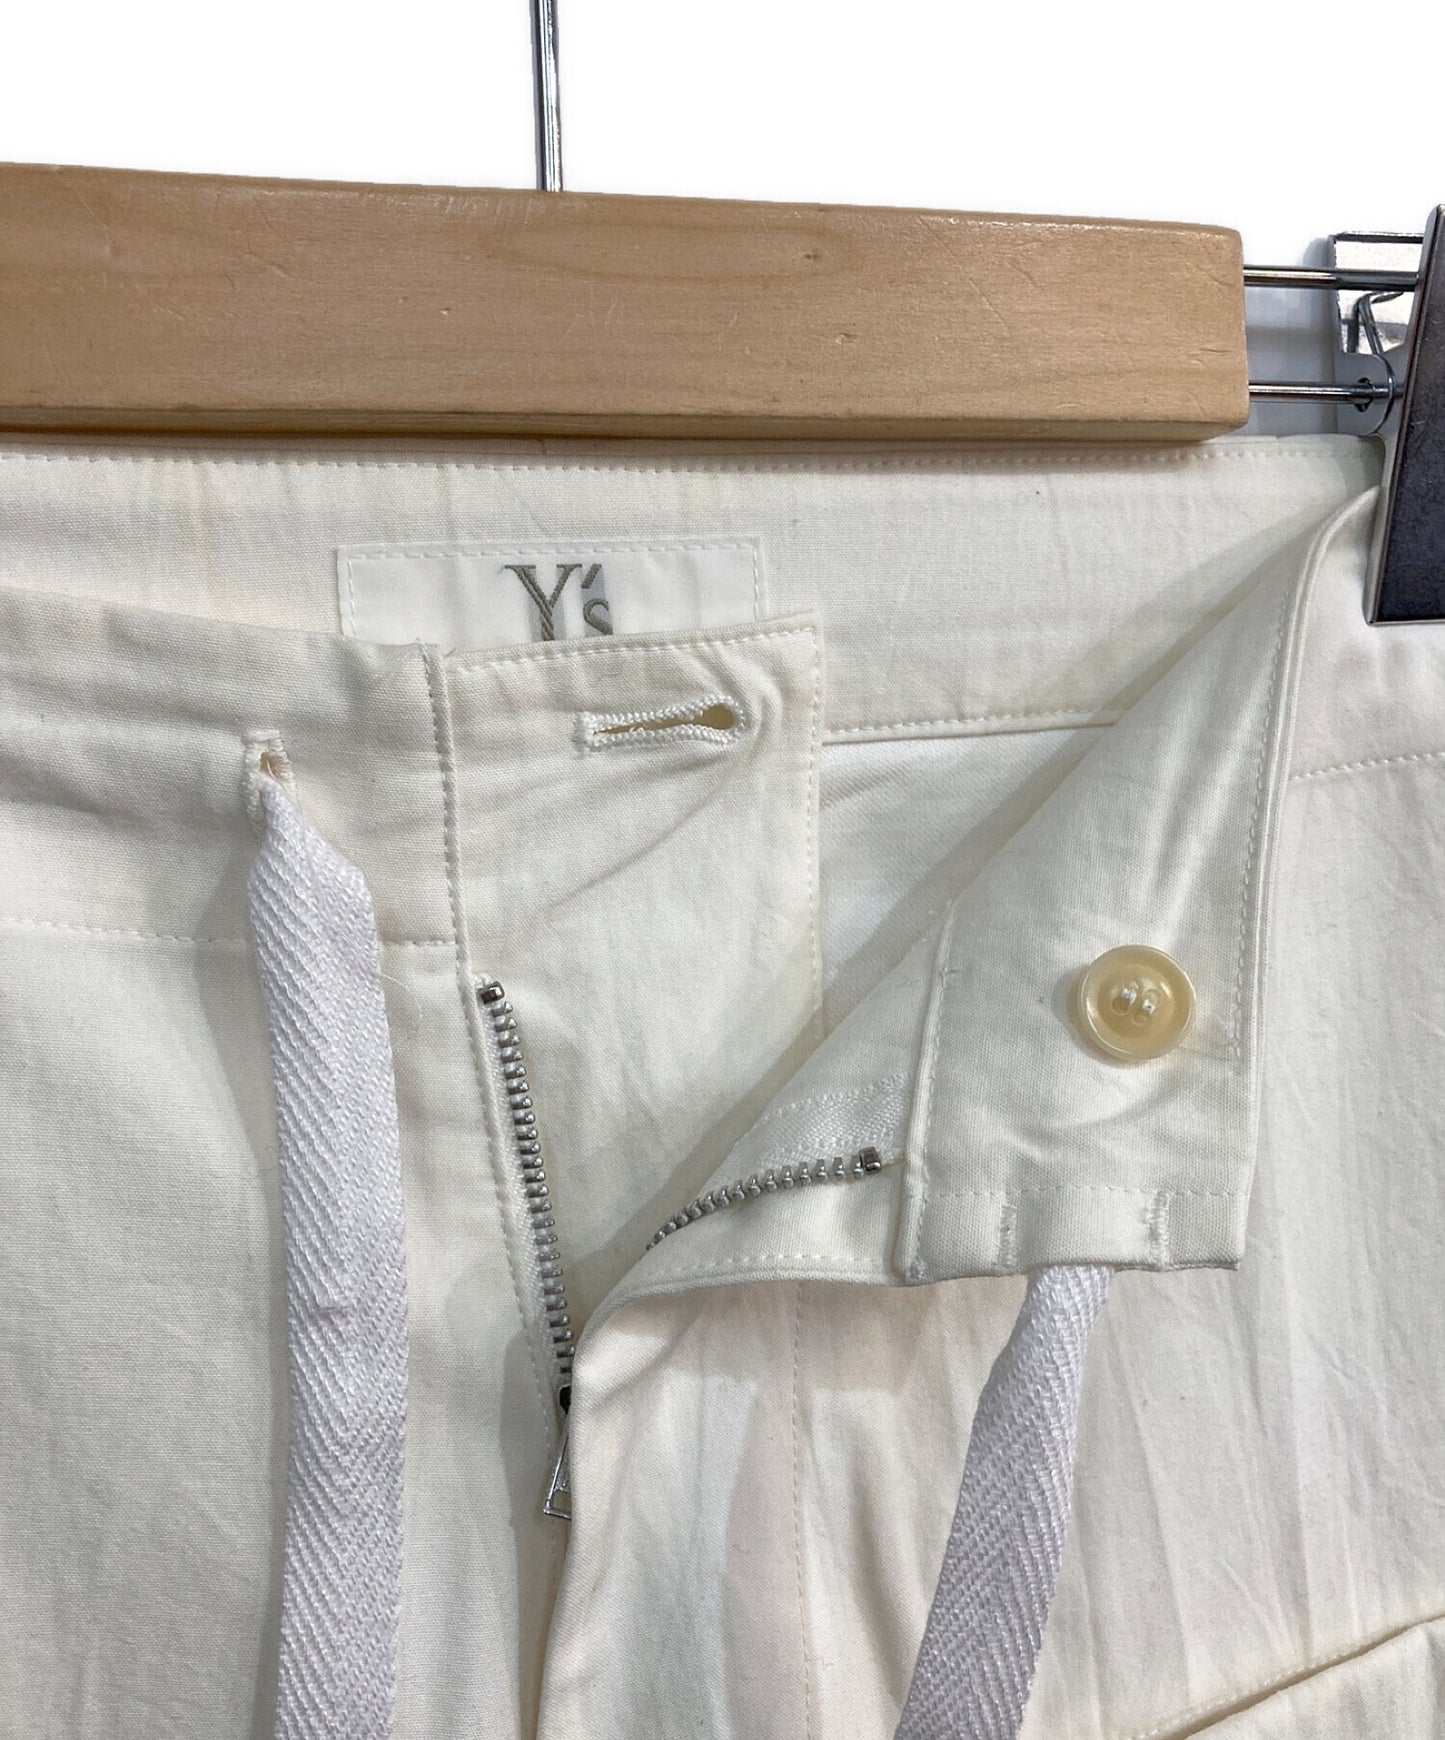 กางเกงกว้างของ Y พร้อมกระเป๋า YW-P07-008 YW-P07-008